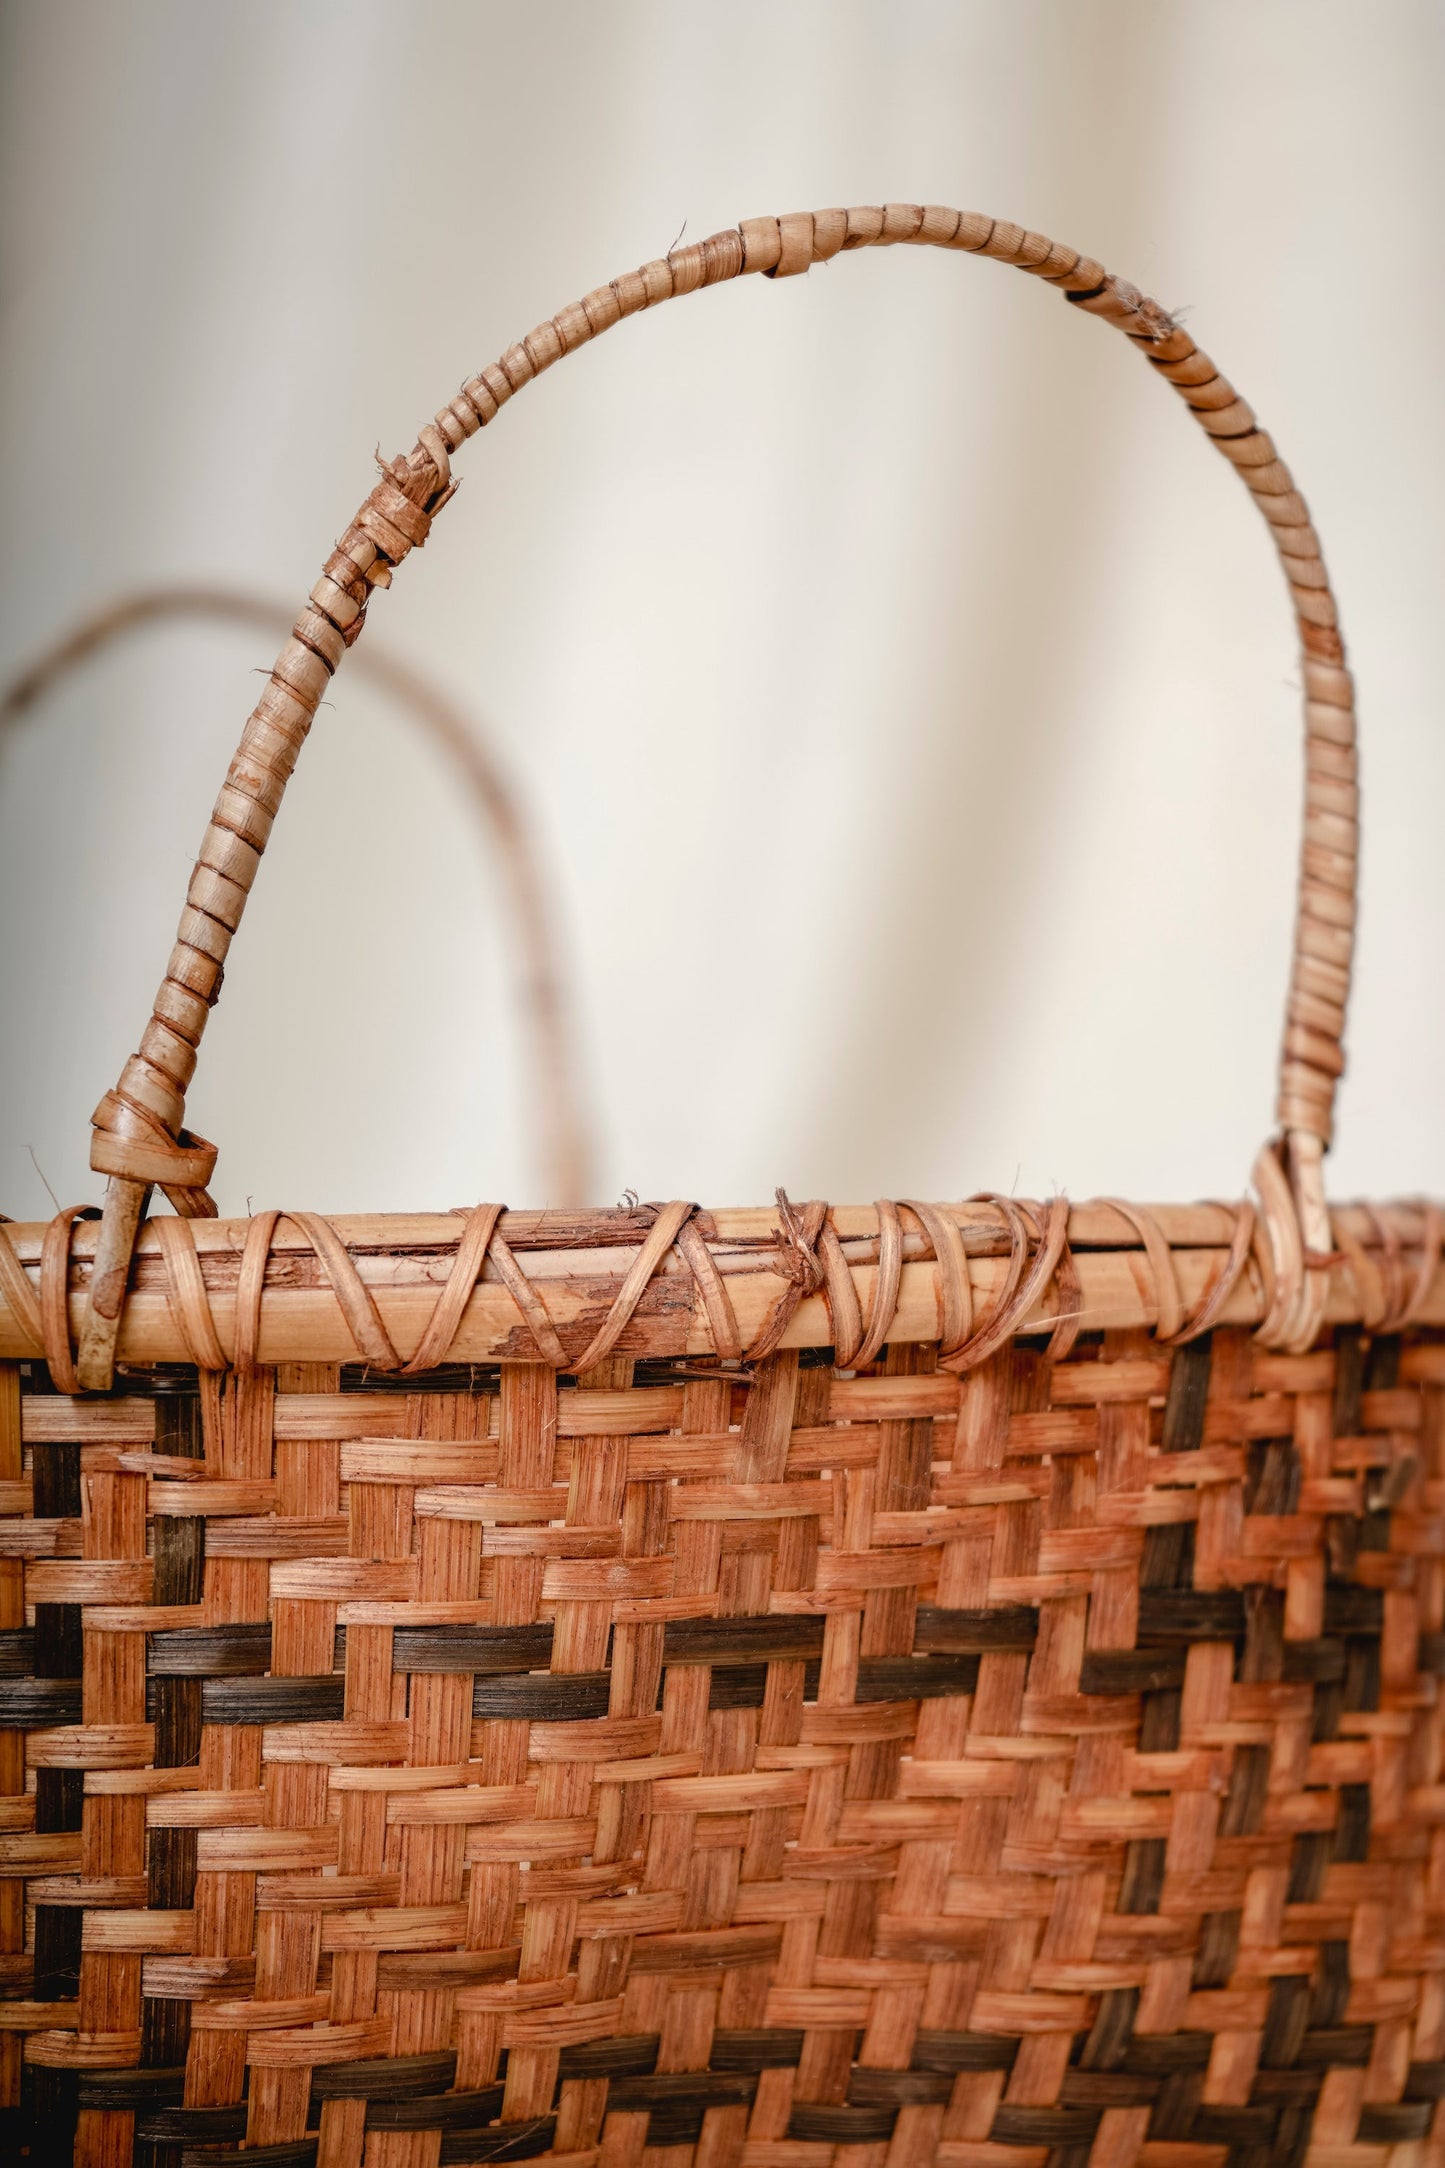 Oval Bamboo Basket with Handle